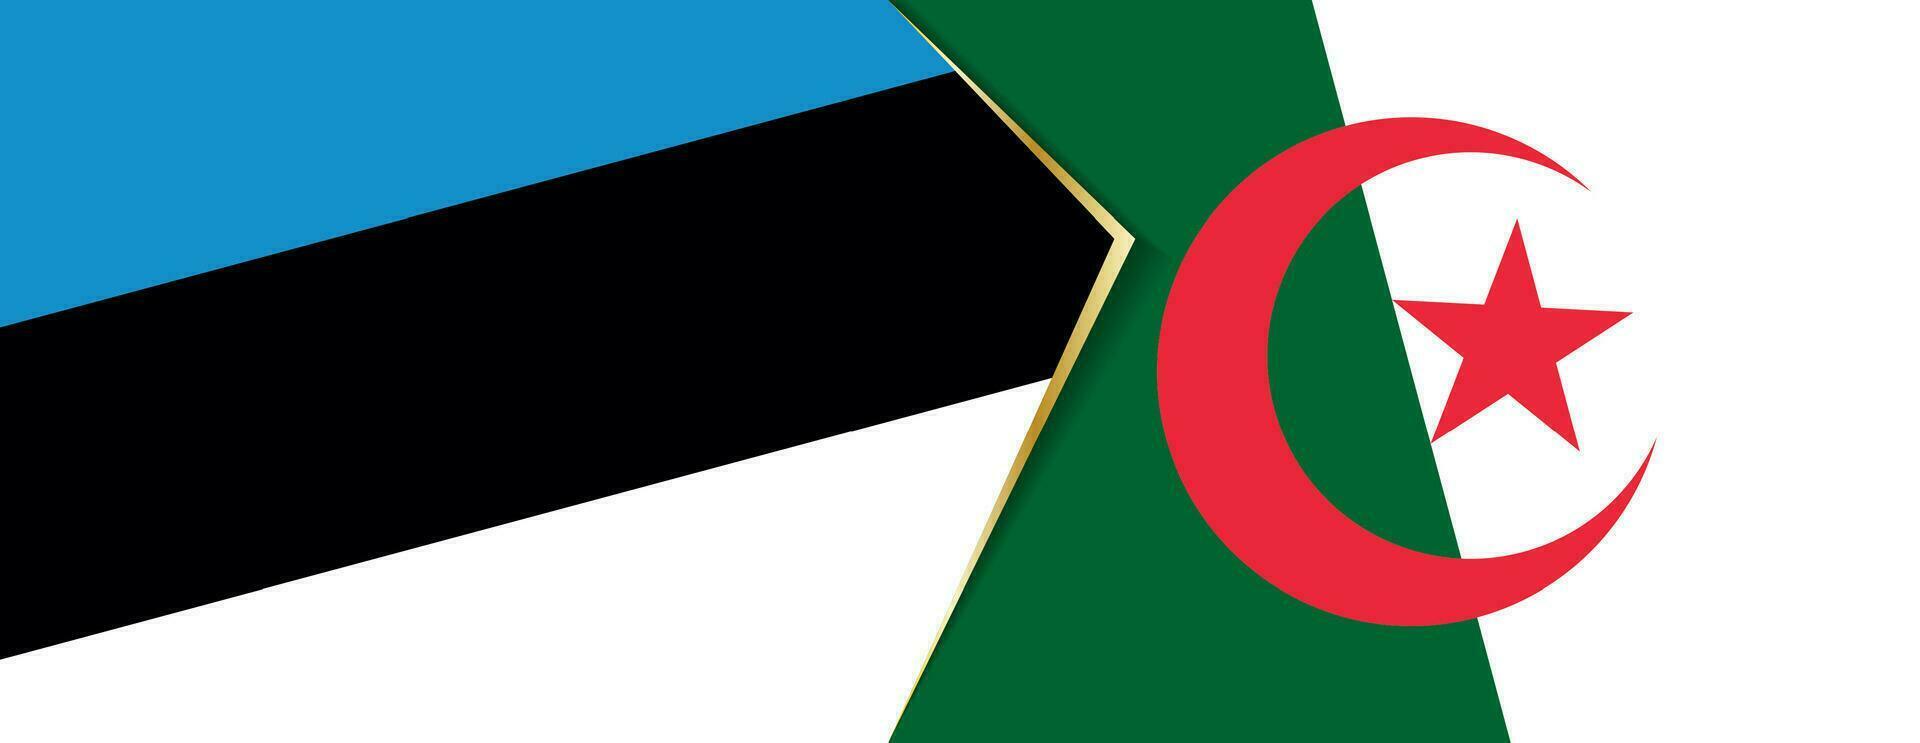 Estonia y Argelia banderas, dos vector banderas